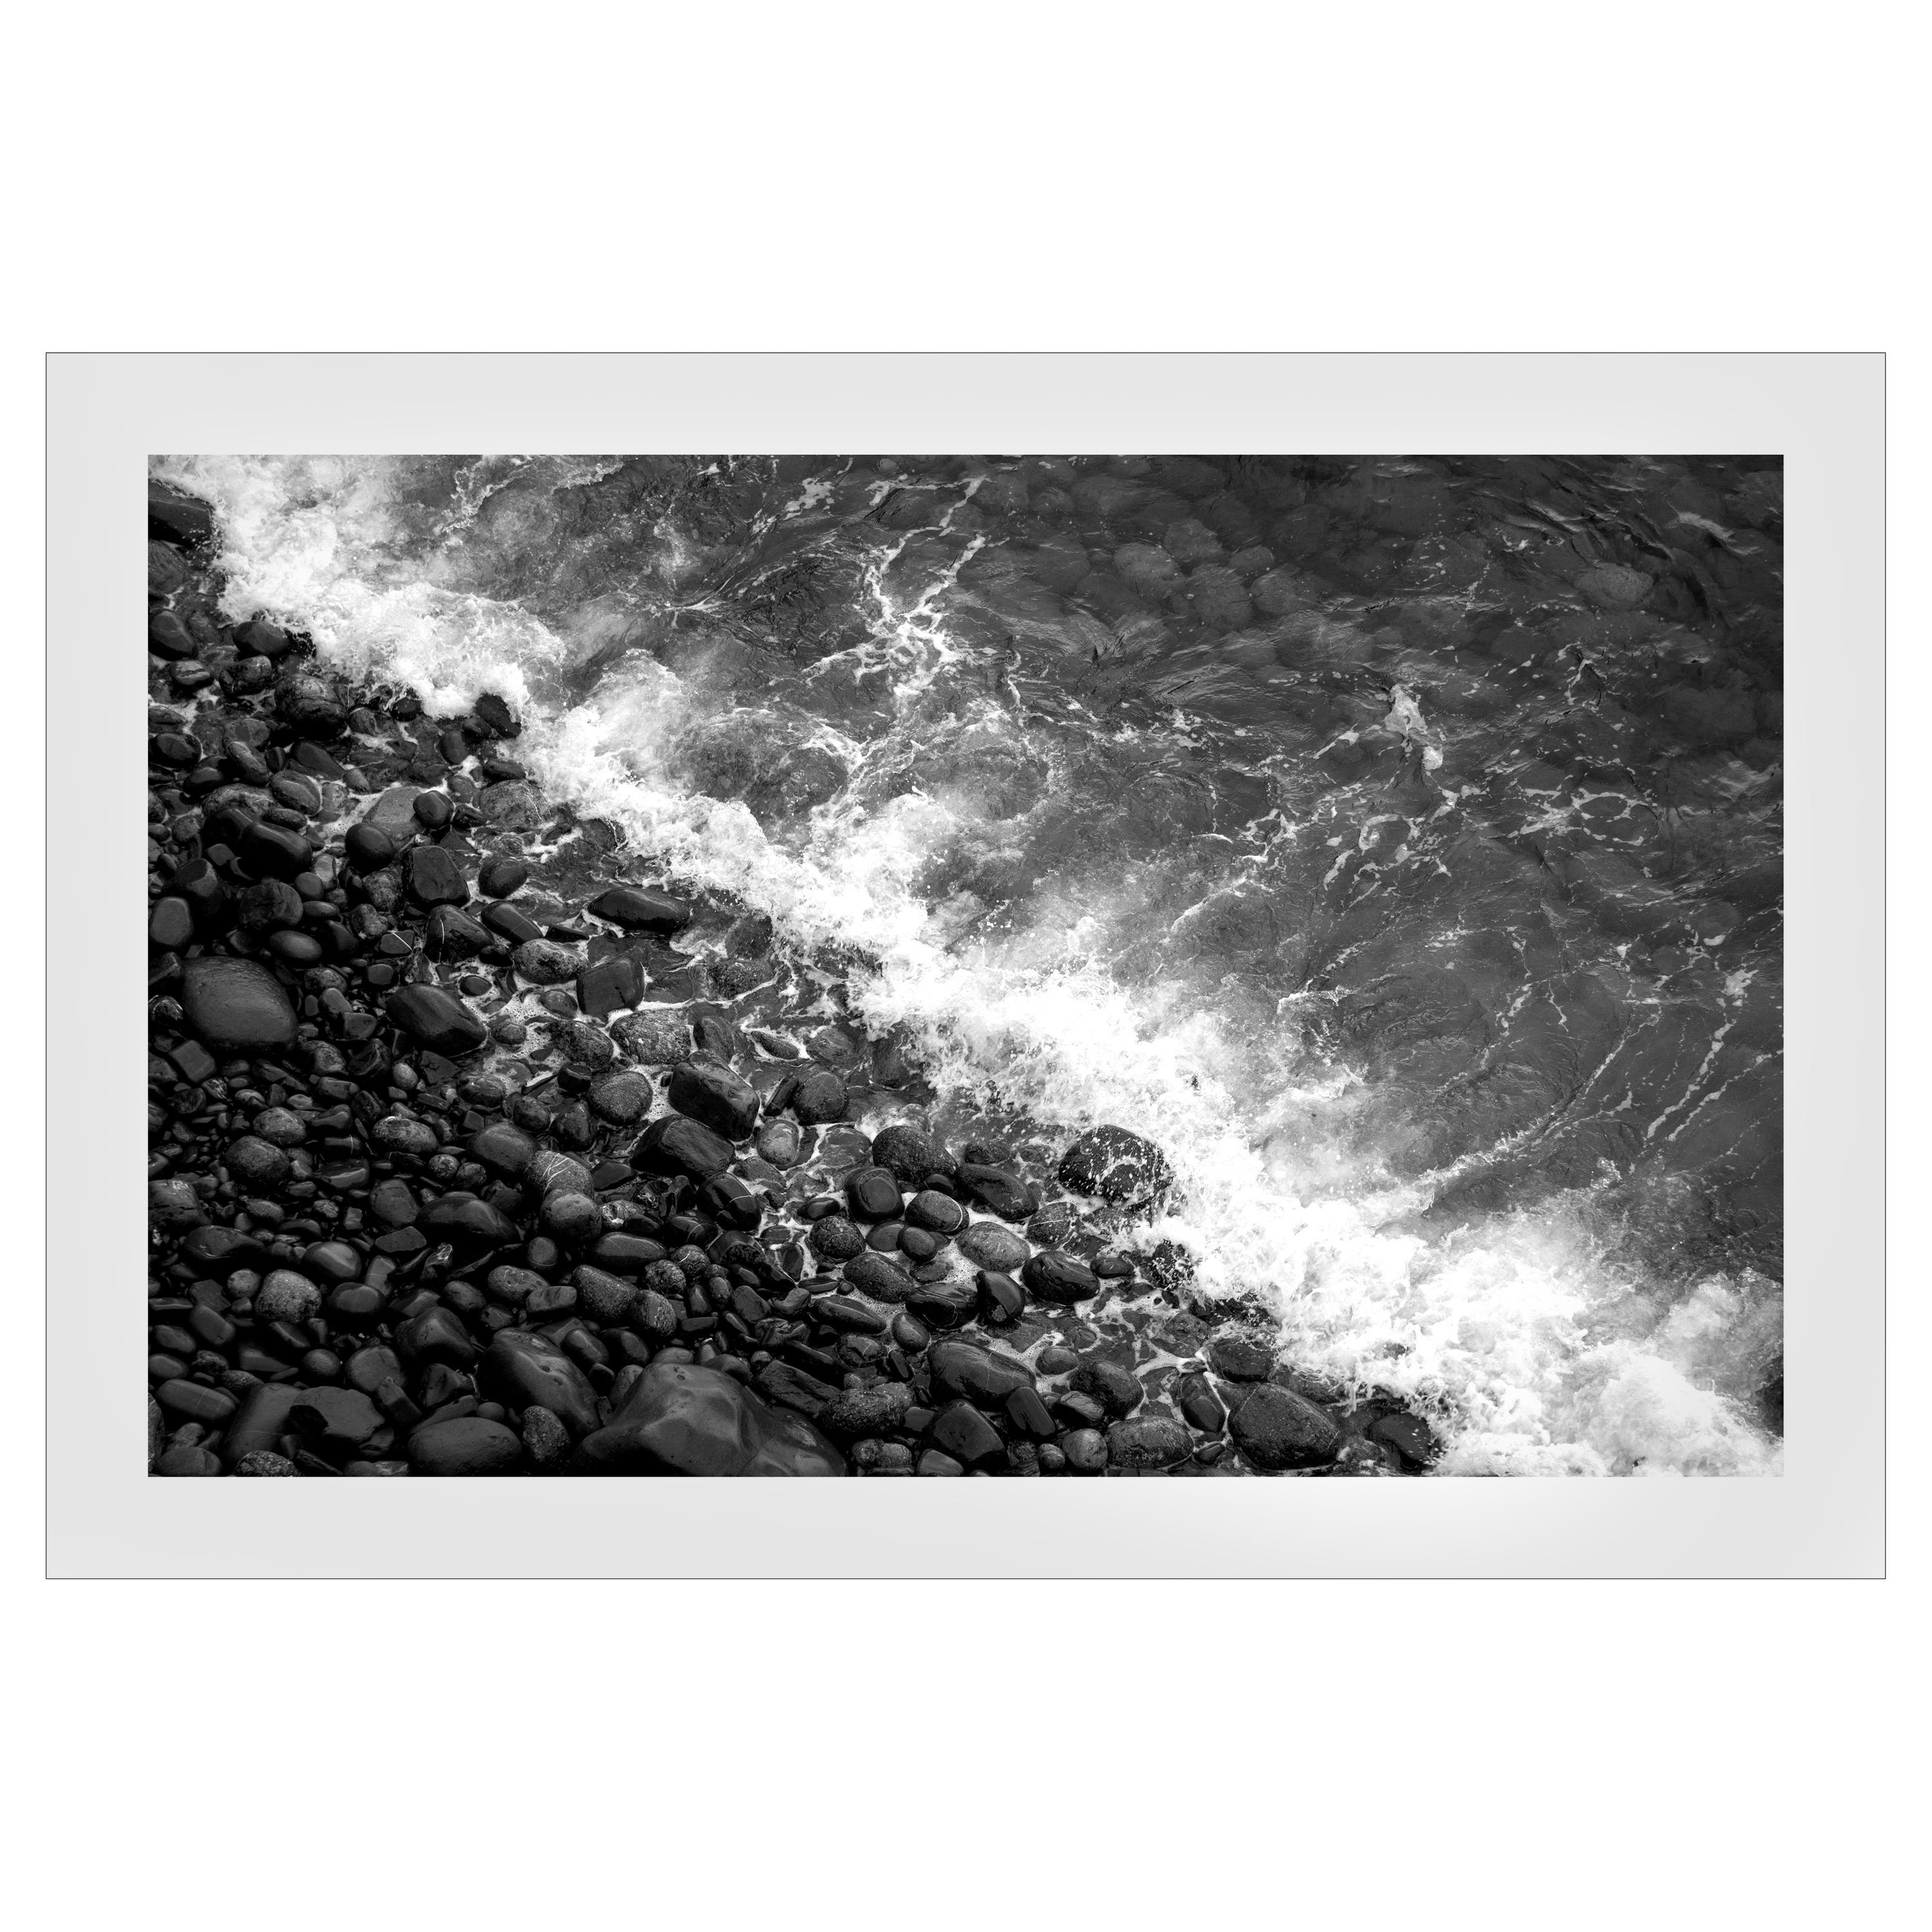 Kind of Cyan Landscape Photograph – Black & White Shore Line, Giclée-Druck in limitierter Auflage vom britischen Pebble Beach